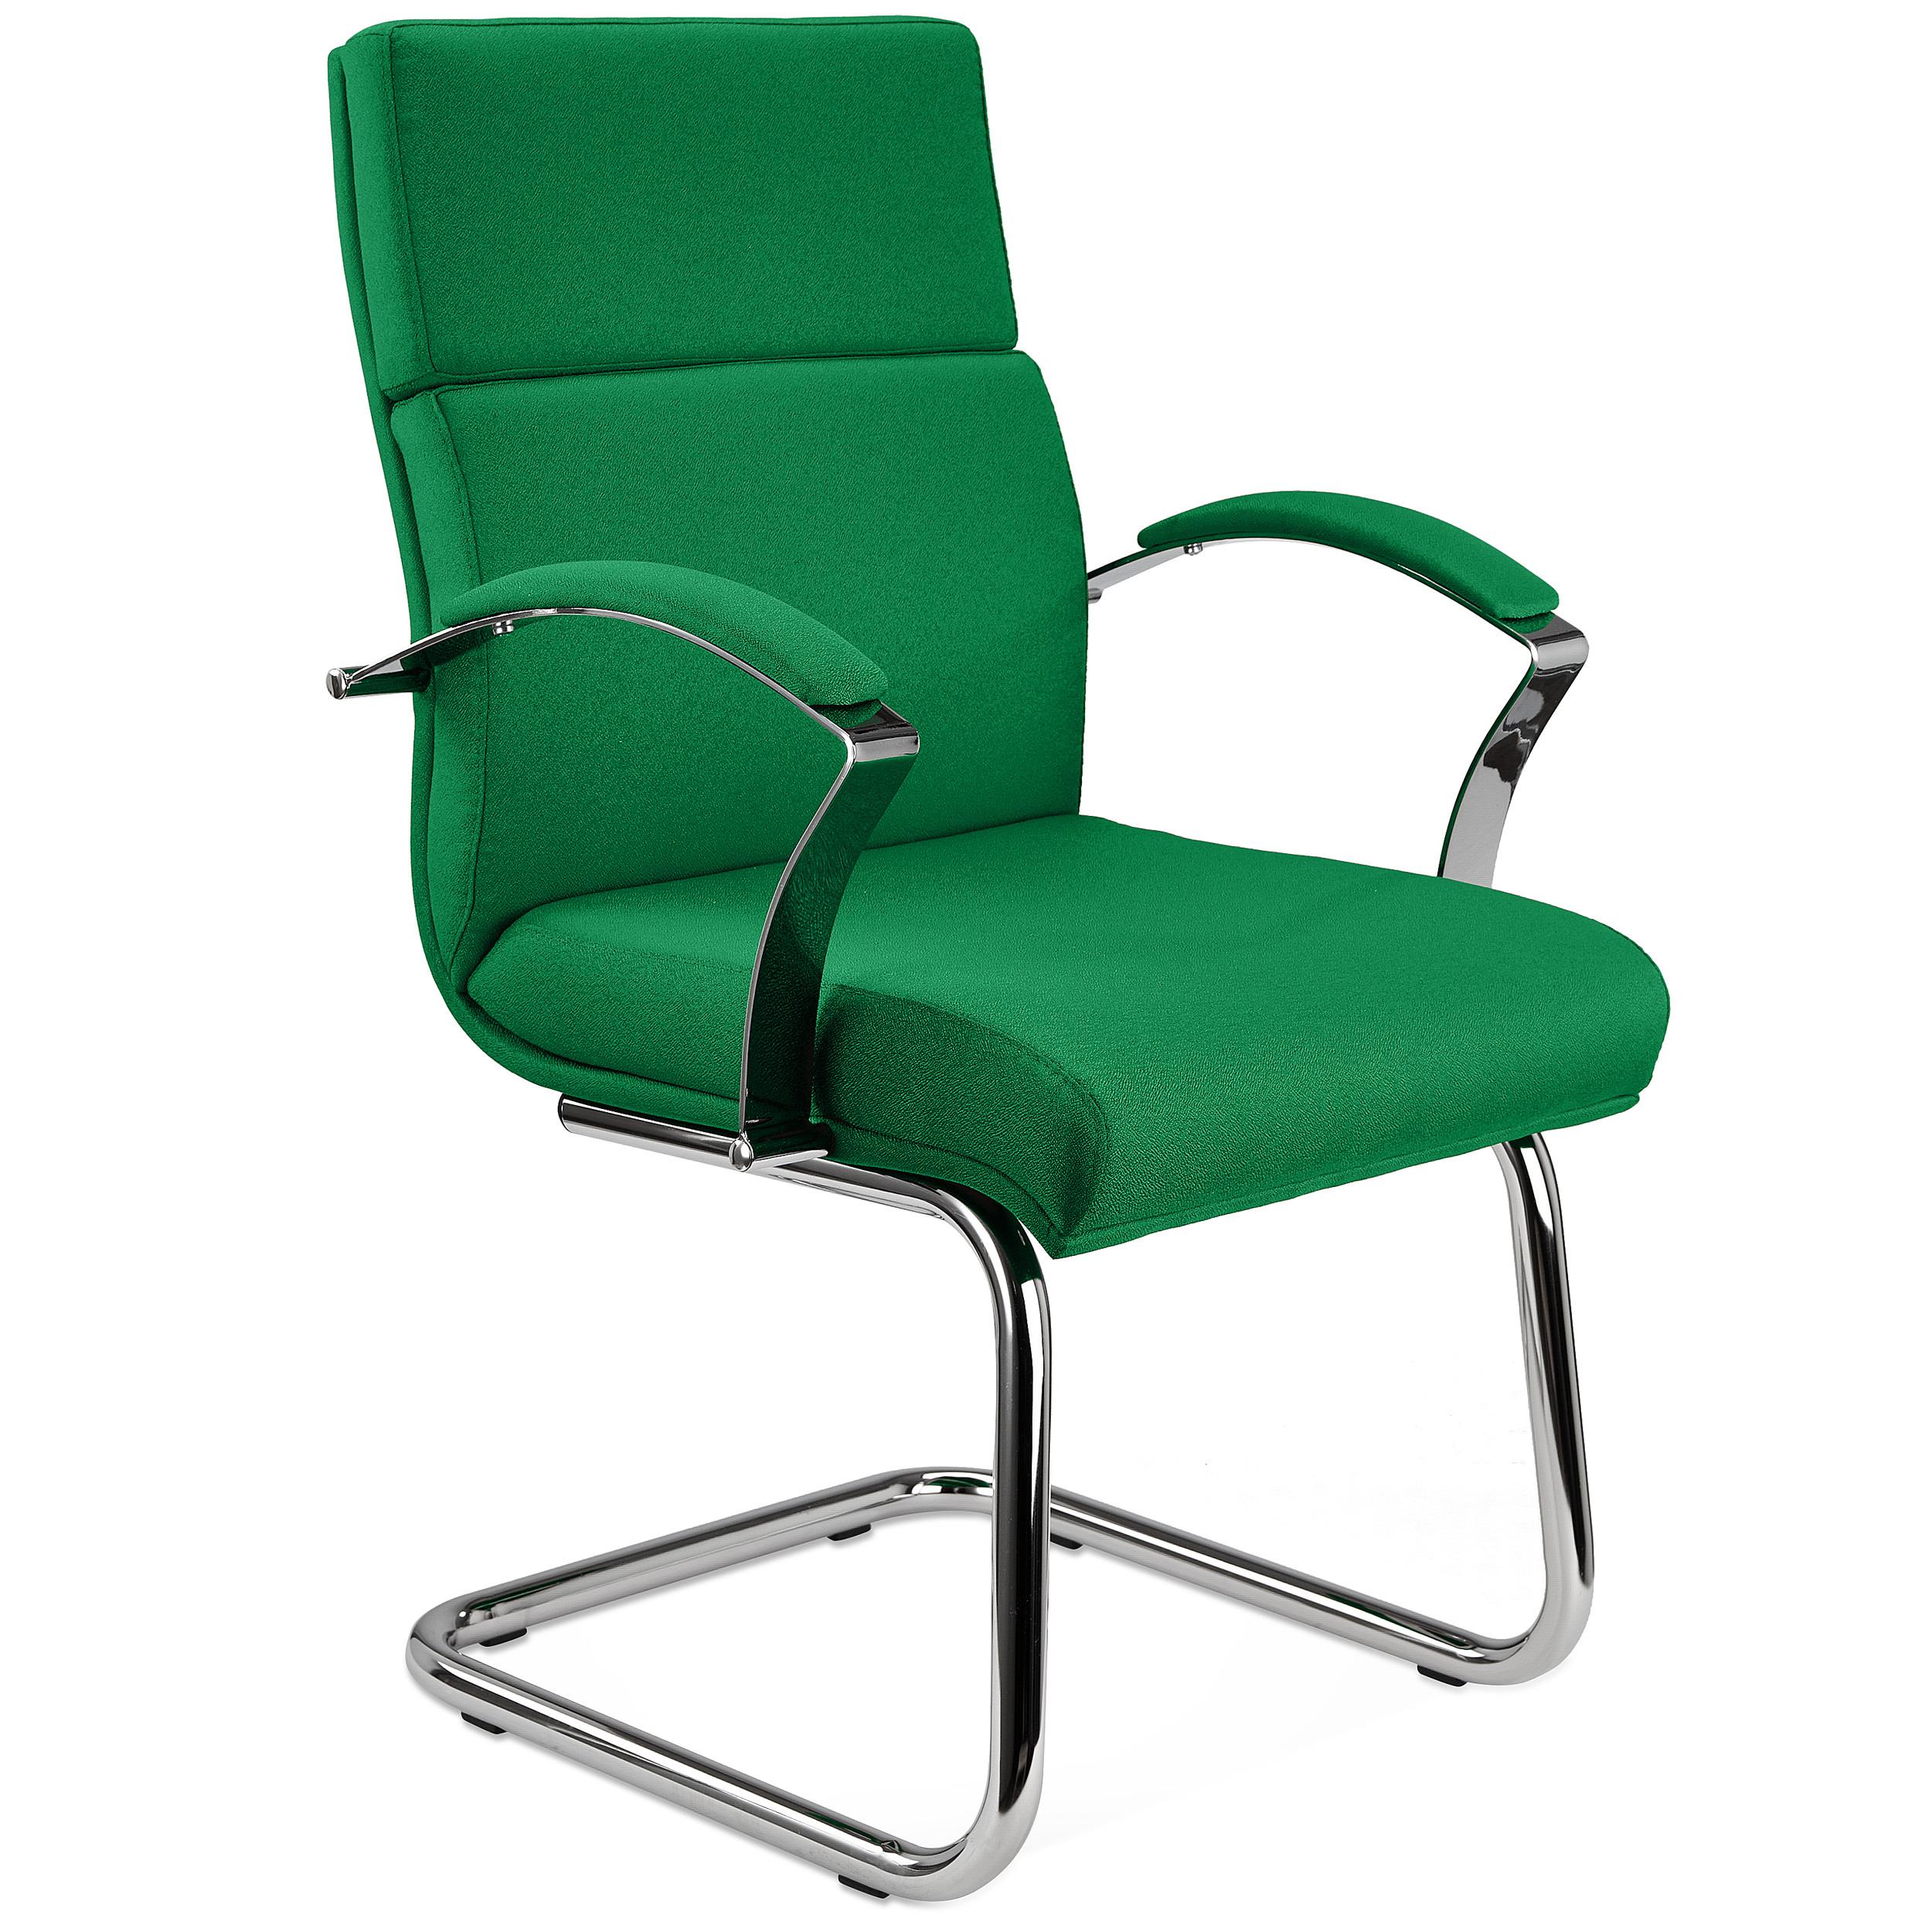 Chaise visiteur RABAT TISSU, Grande Qualité et Design, couleur Vert